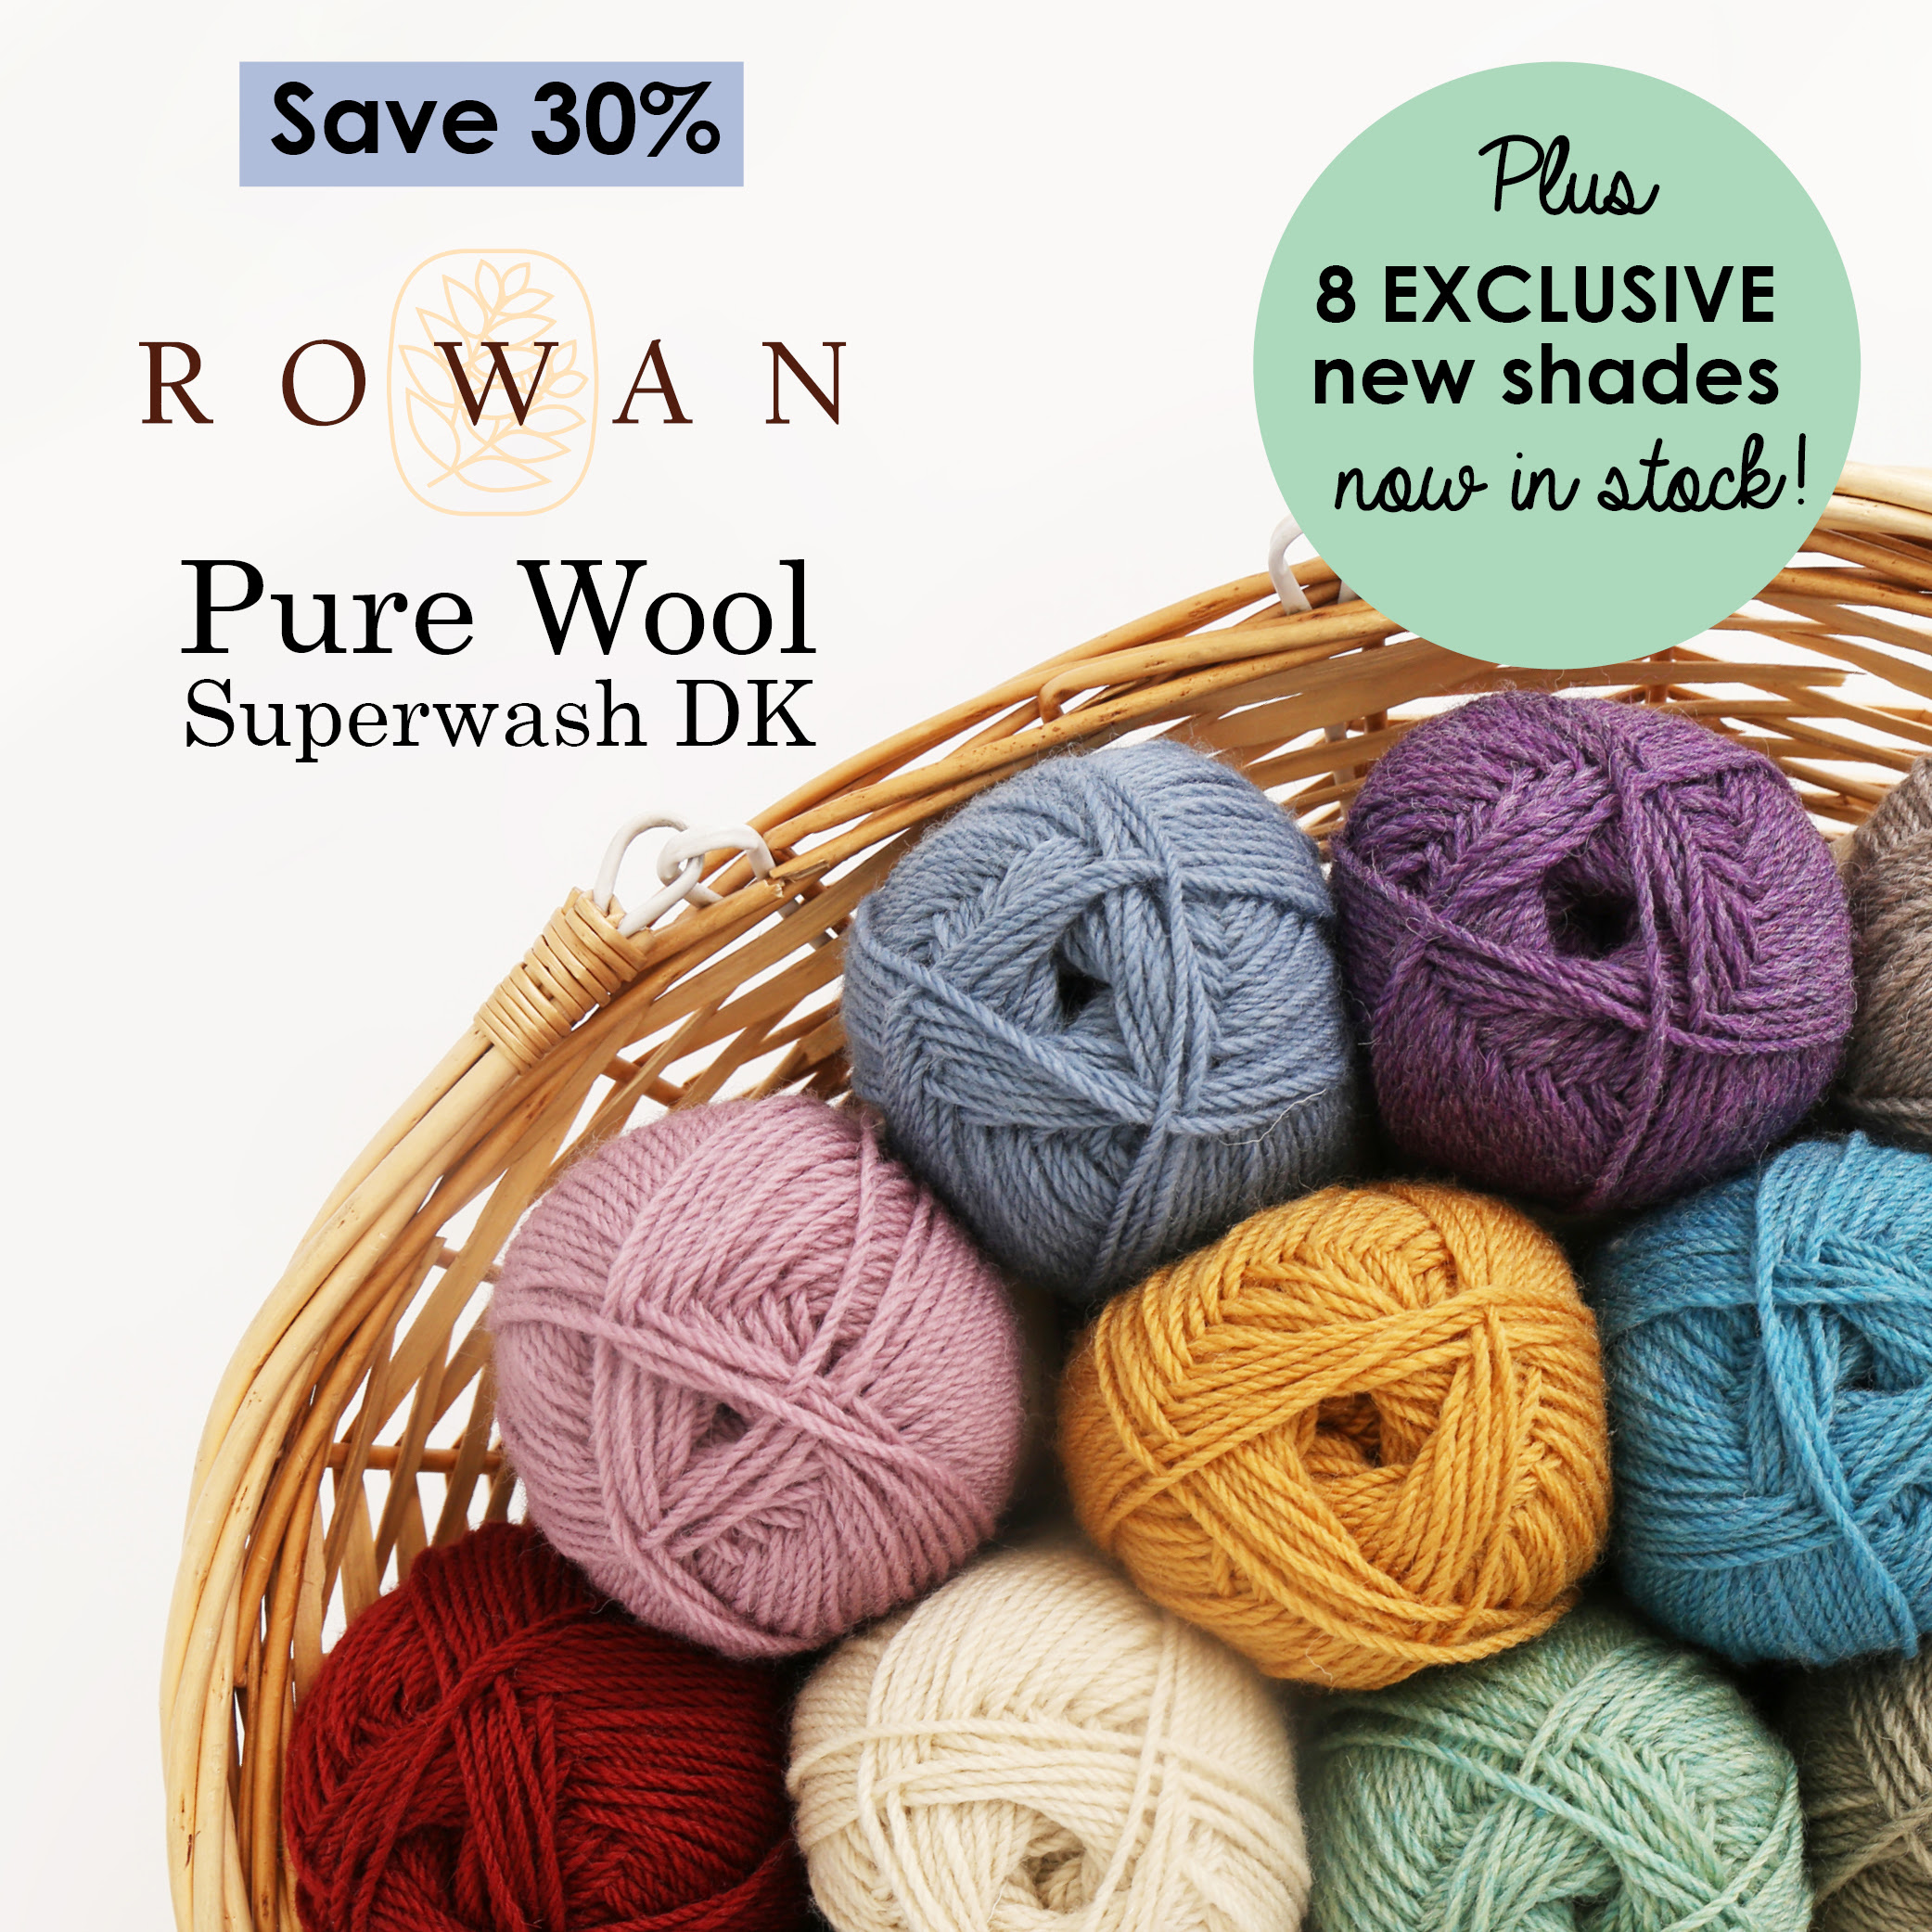 New exclusive Rowan Pure Wool Superwash DK shades at Wool